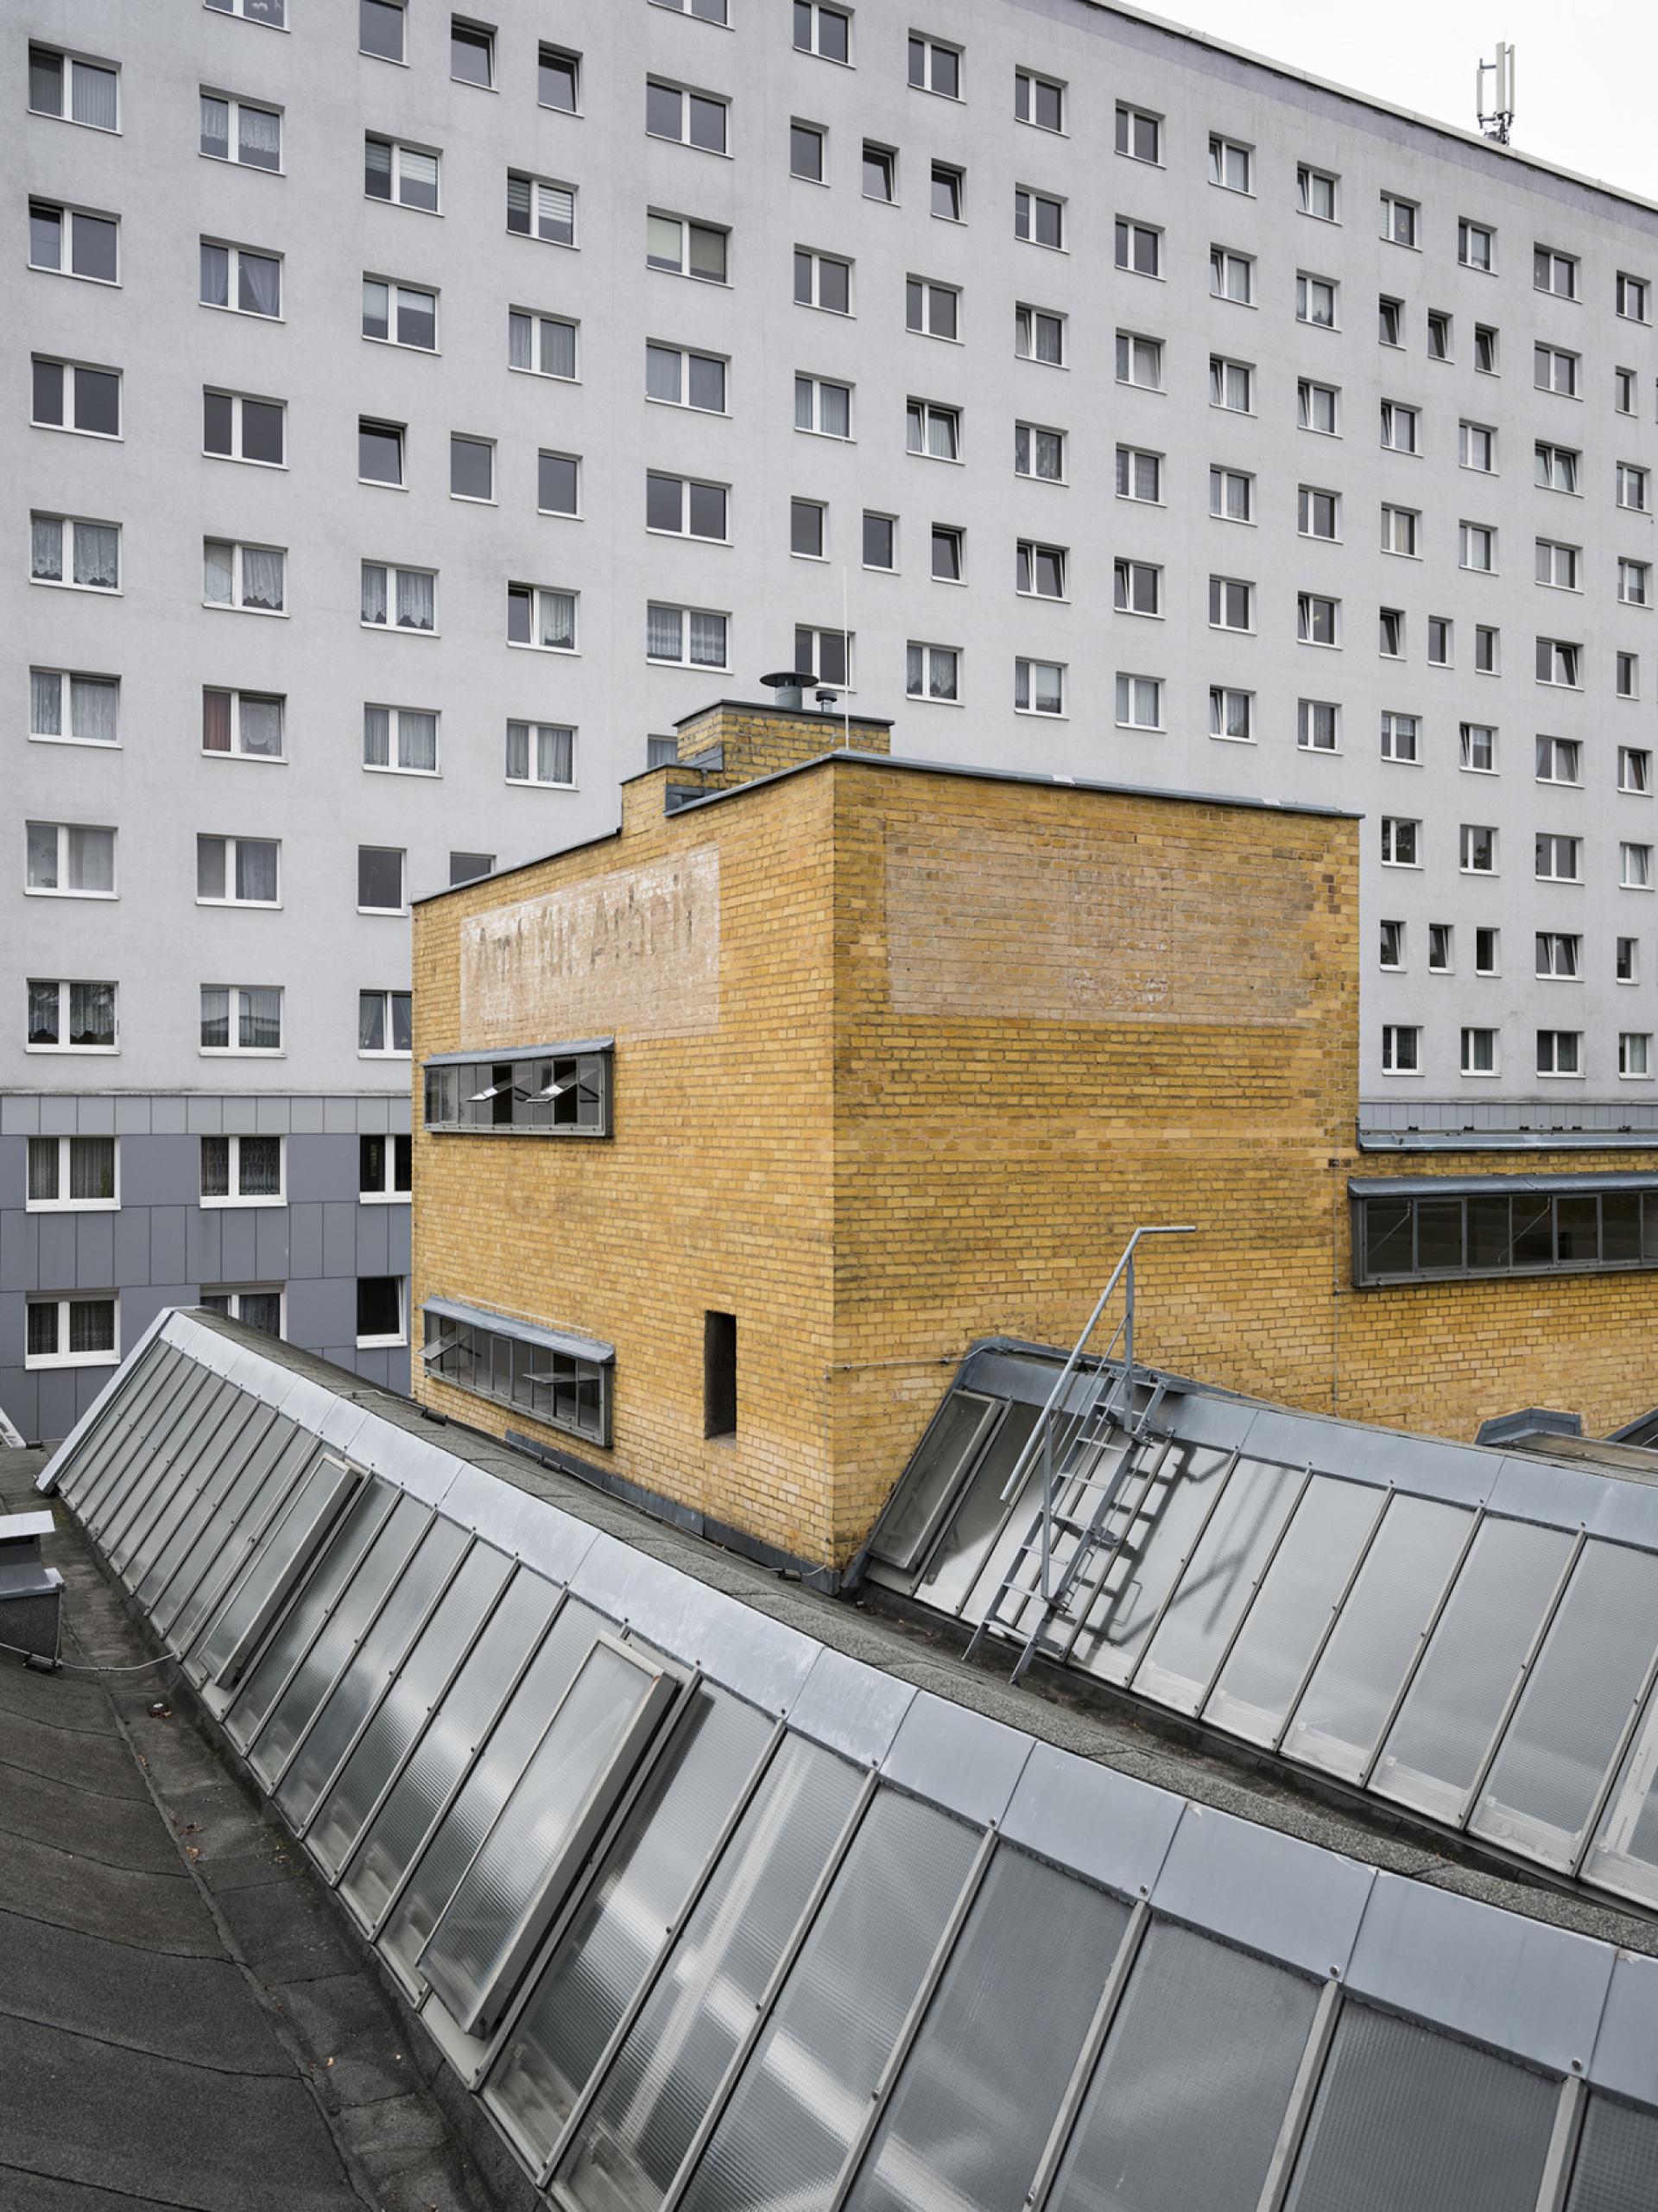 Employment Office by Walter Gropius, Dessau 1928/29 | Photo Thomas Meyer/ Ostkreuz, 2018 © Stiftung Bauhaus Dessau